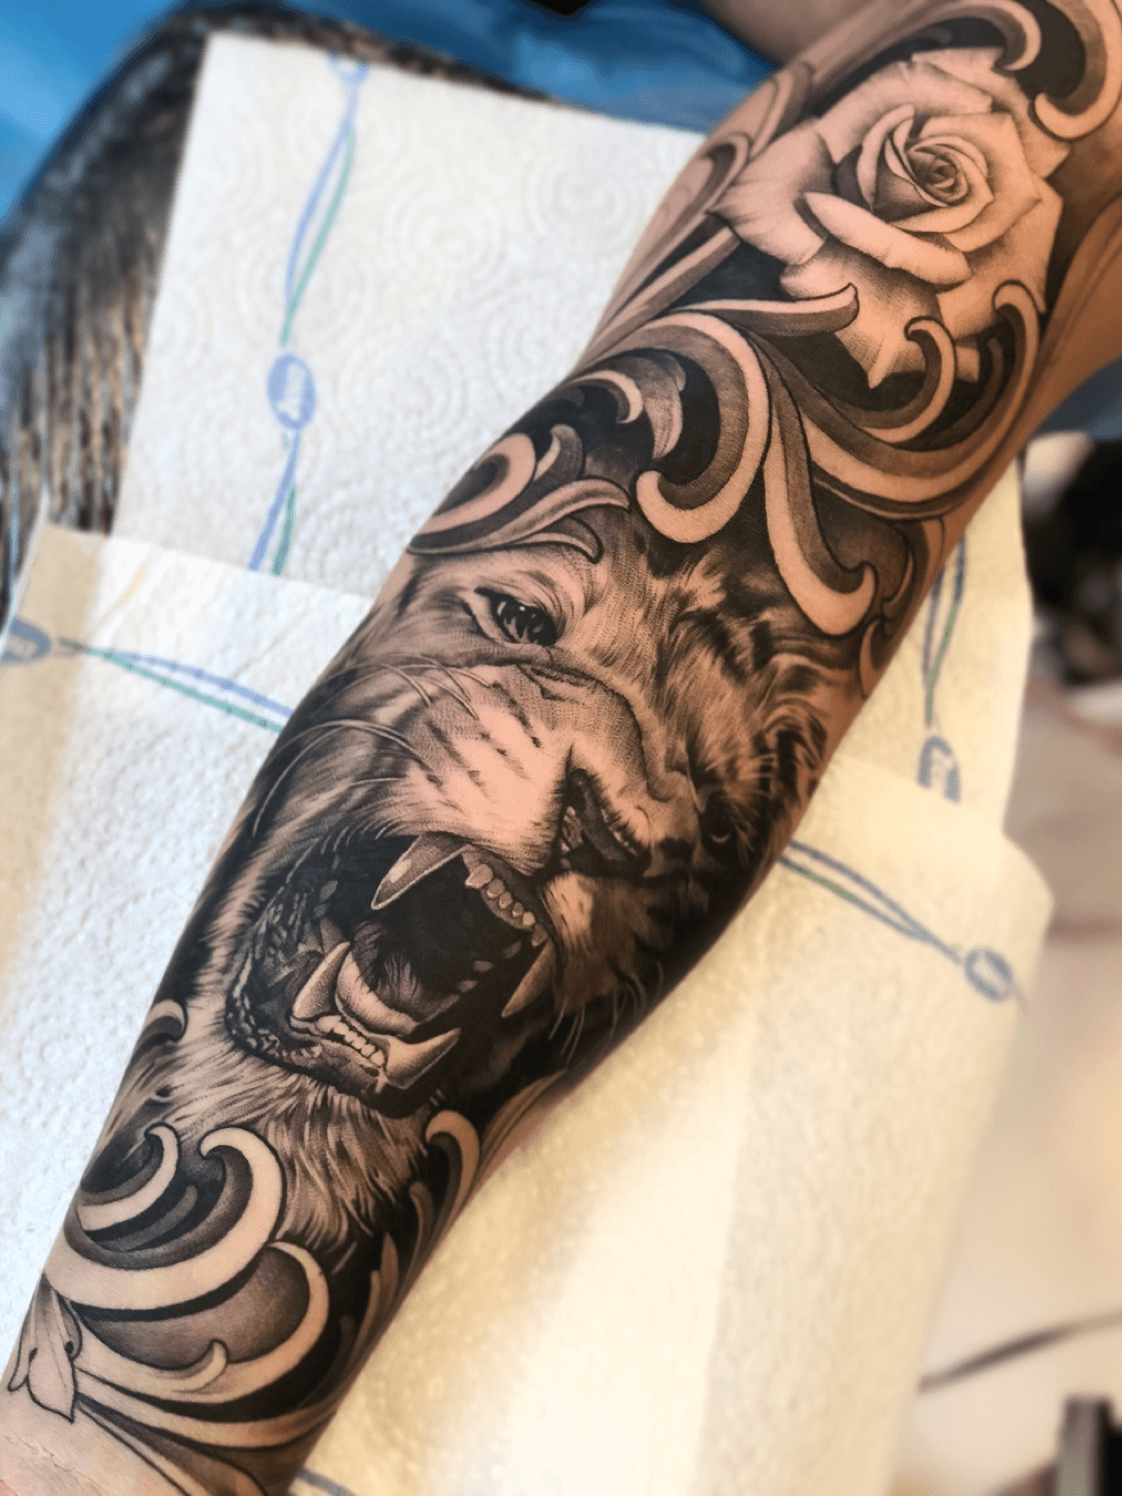 18 Amazing Leo Sleeve Tattoos